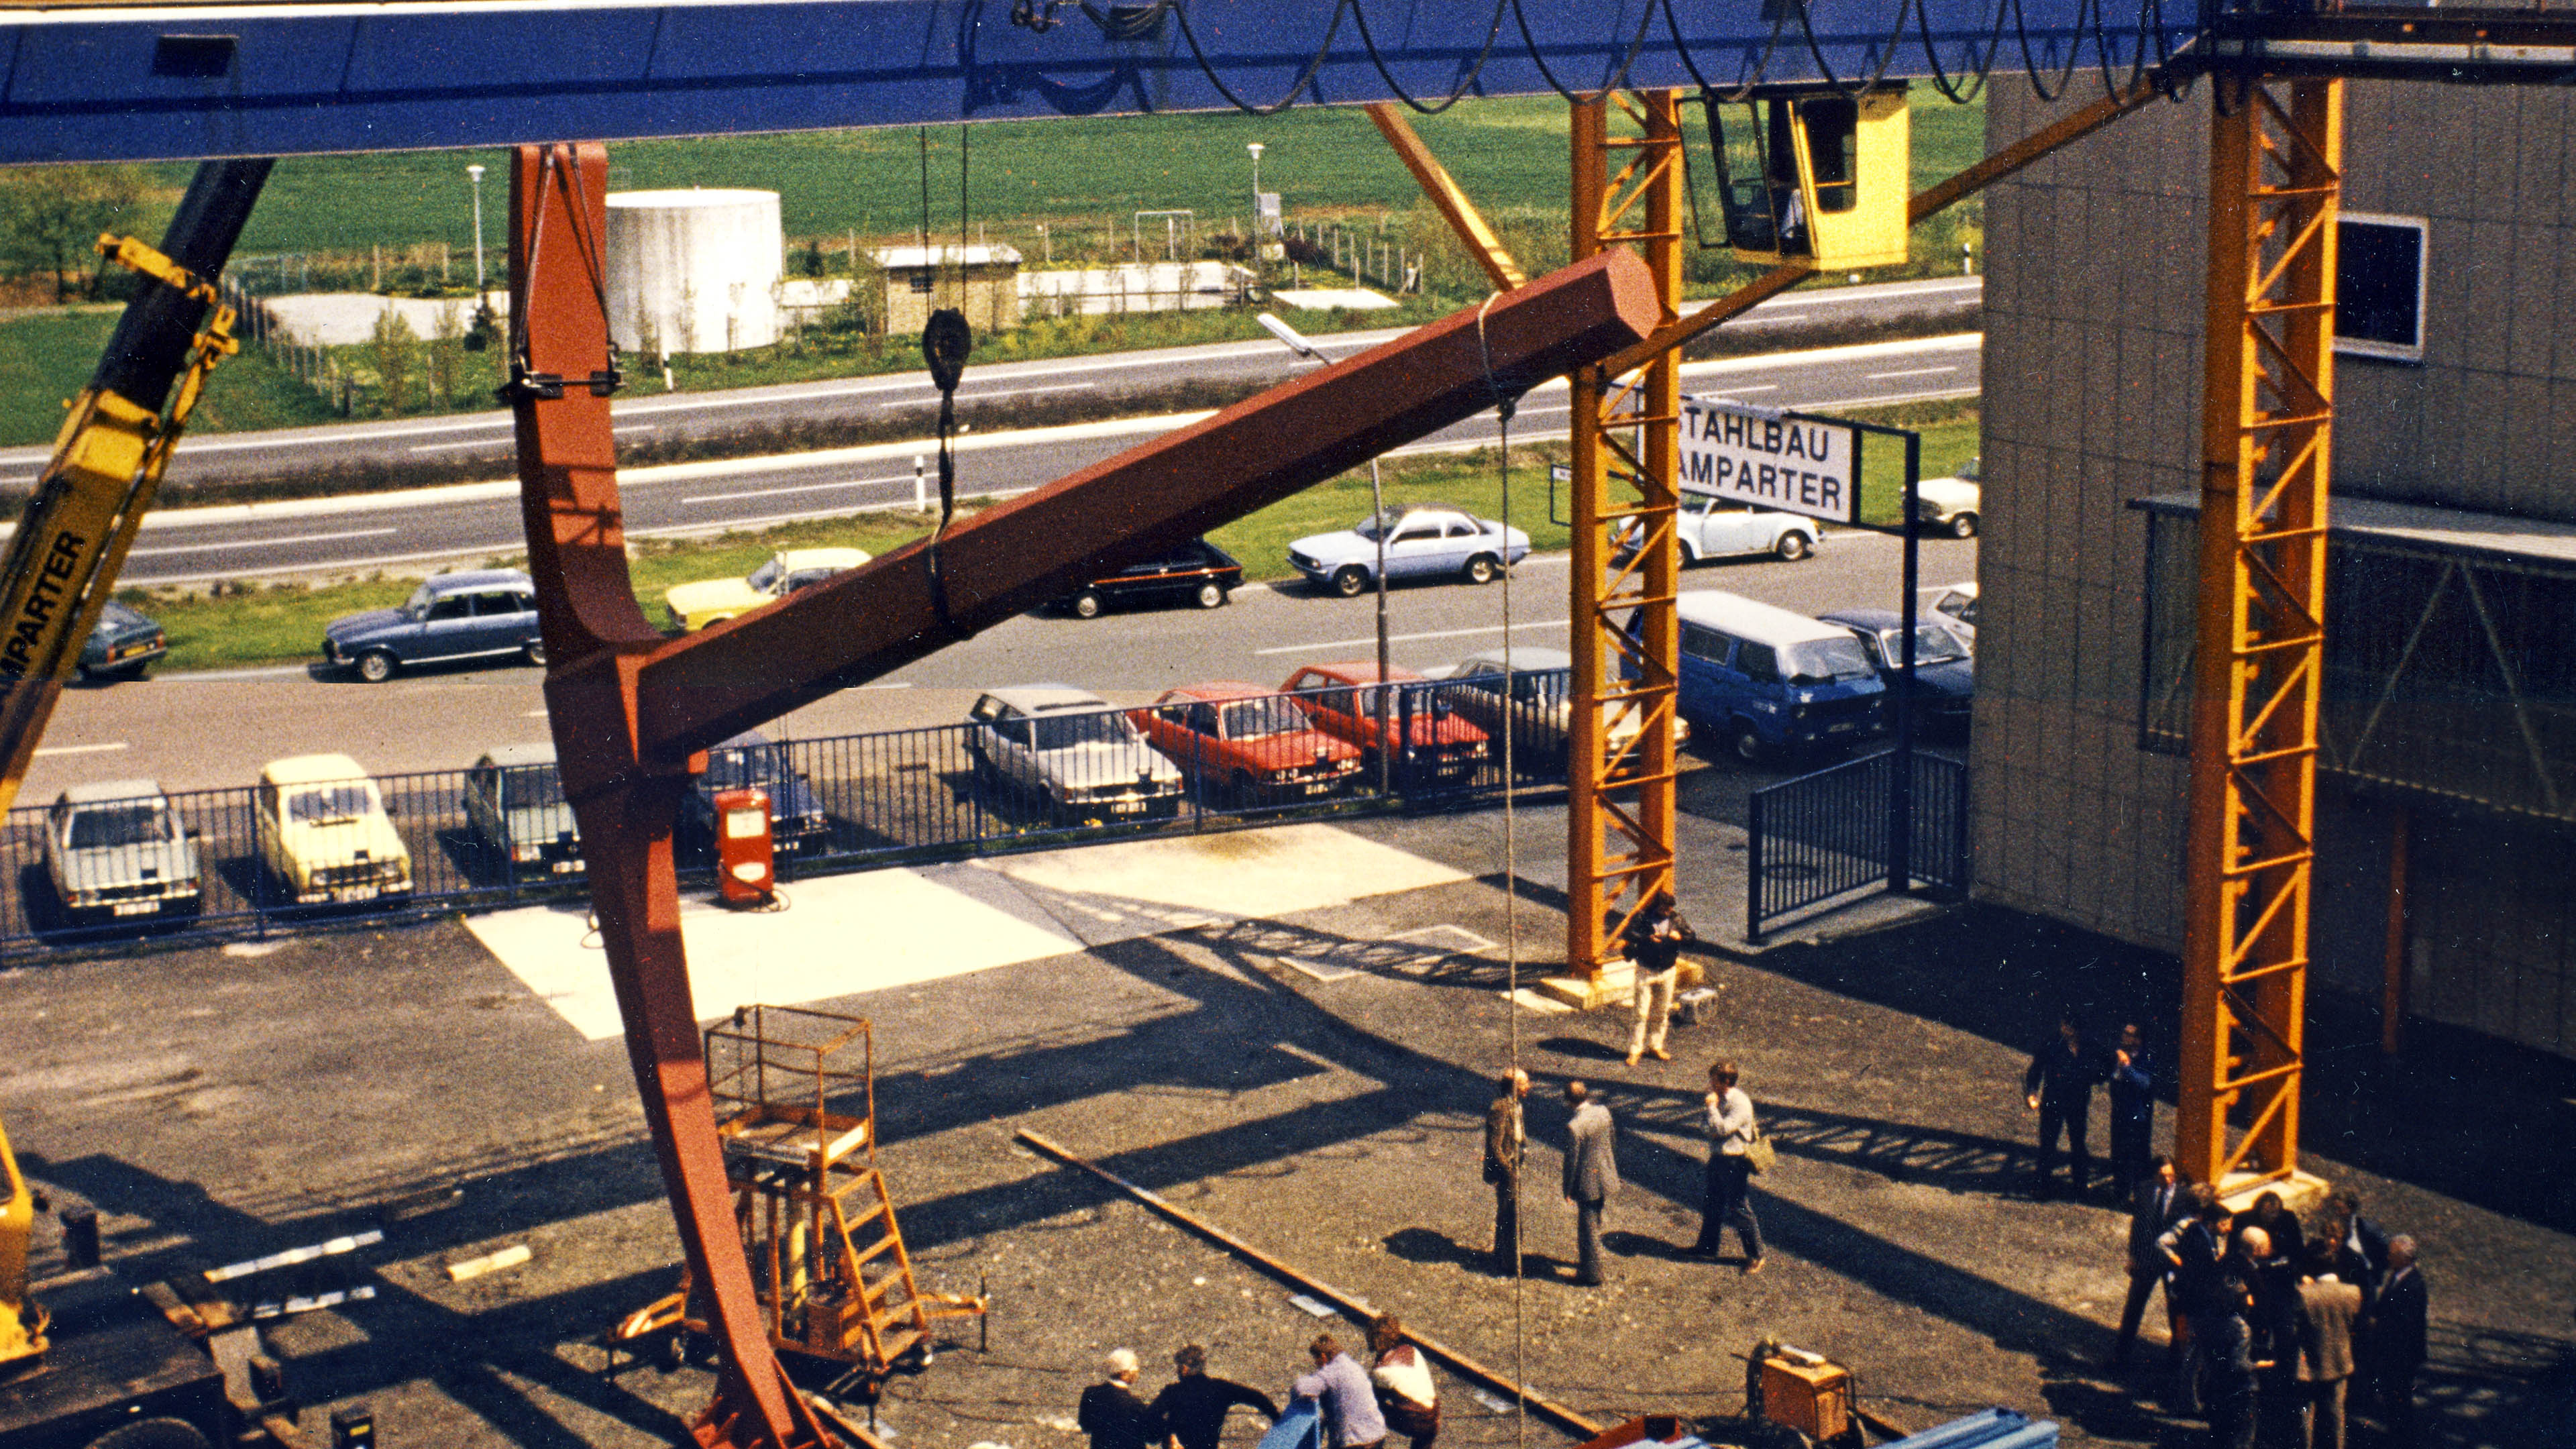 Testmontage der Spitzhacke von Claes Oldenburg zur documenta auf dem Gelände von Stahlbau Lamparter